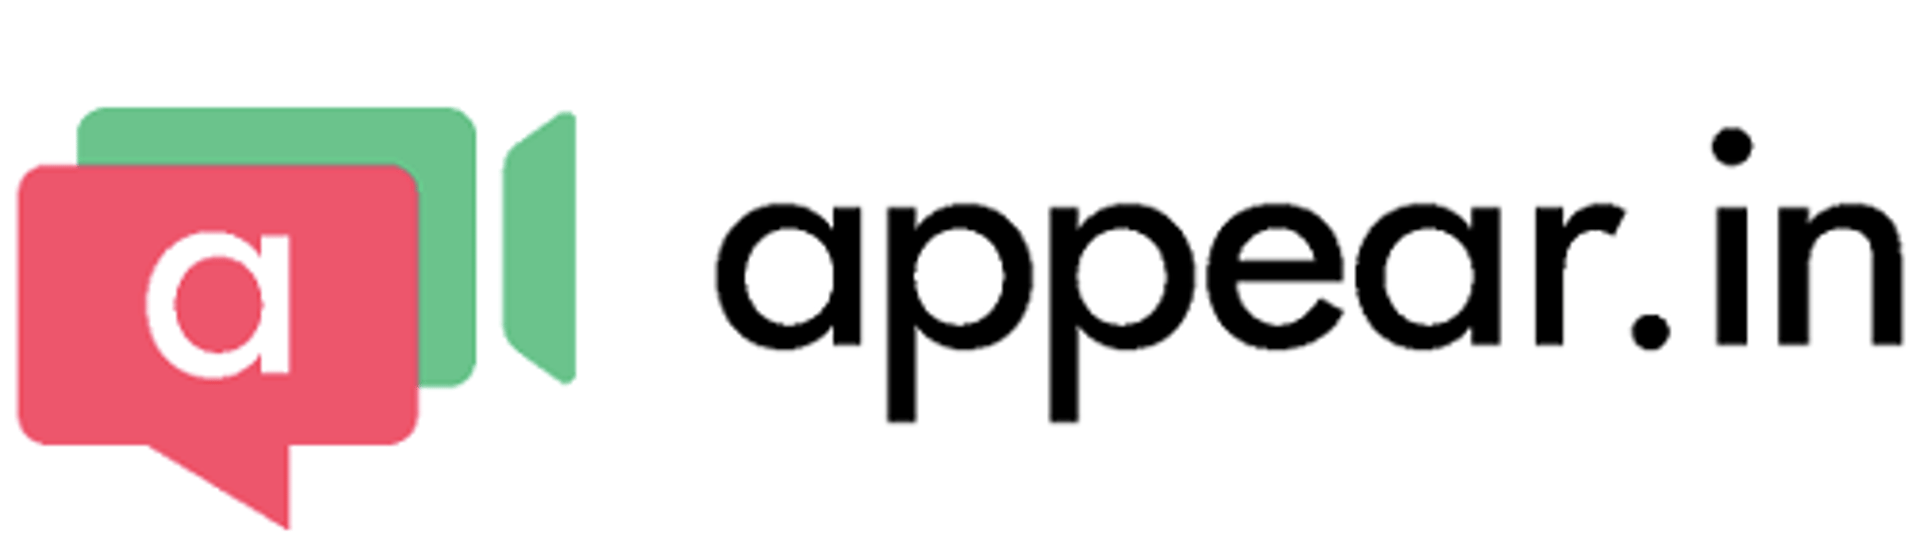 Appear in Logo S